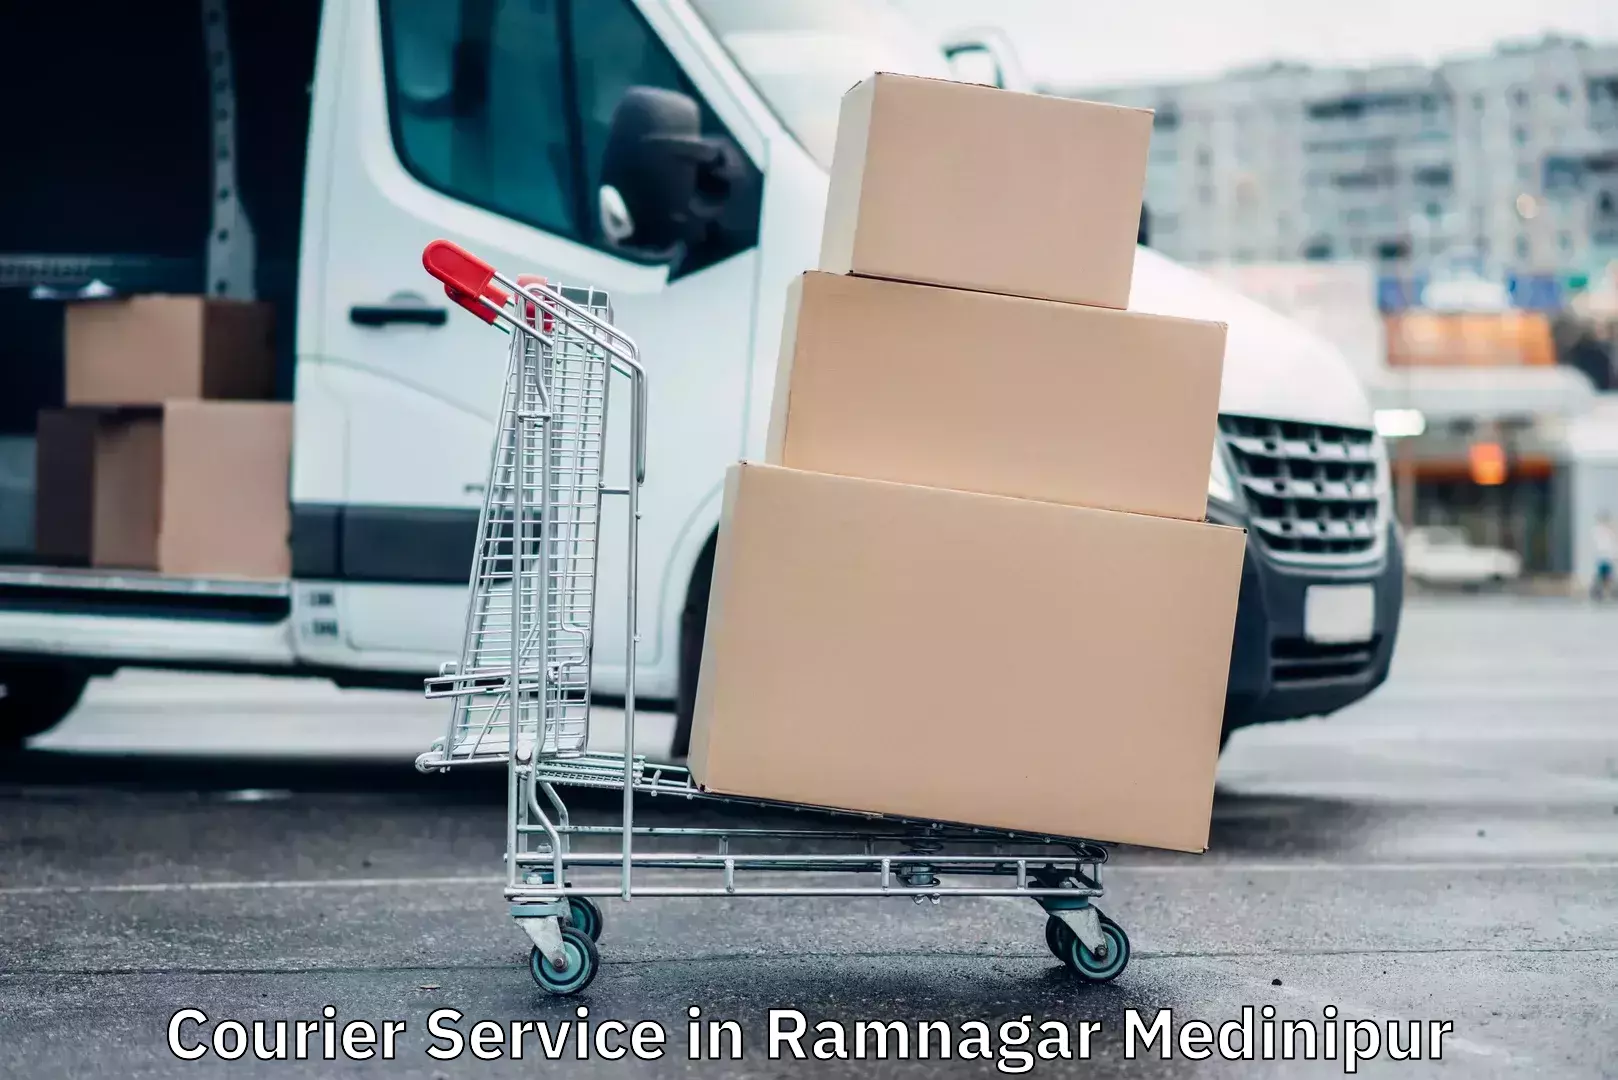 Next-generation courier services in Ramnagar Medinipur